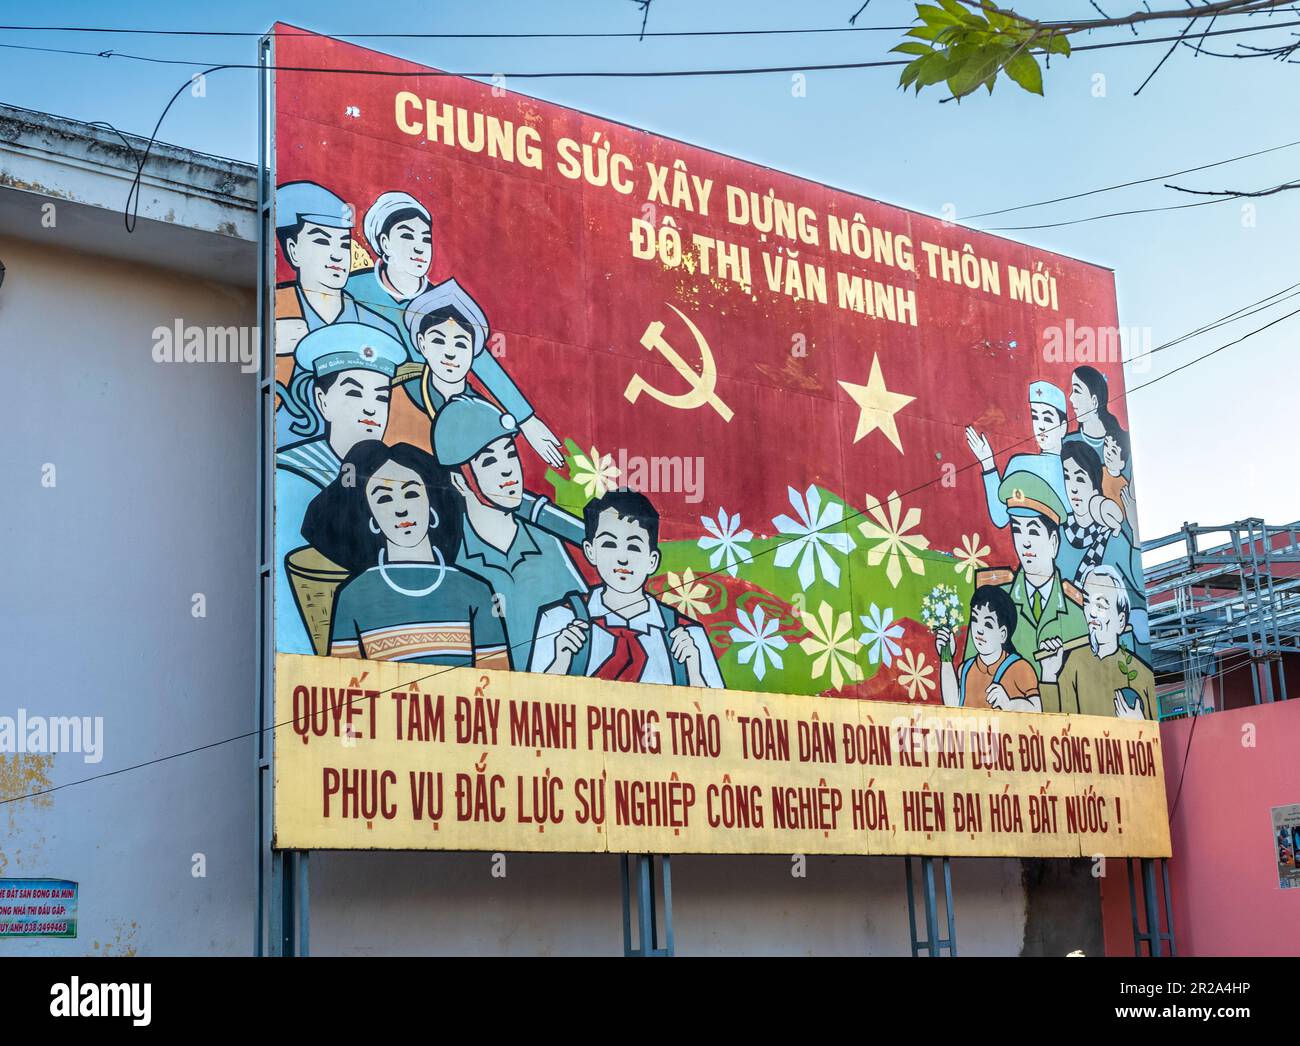 Eine Propaganda der Kommunistischen Partei Vietnams am Straßenrand, die alle Tyos der Menschen im Land lobt, um eine moderne Nation aufzubauen. Transla Stockfoto